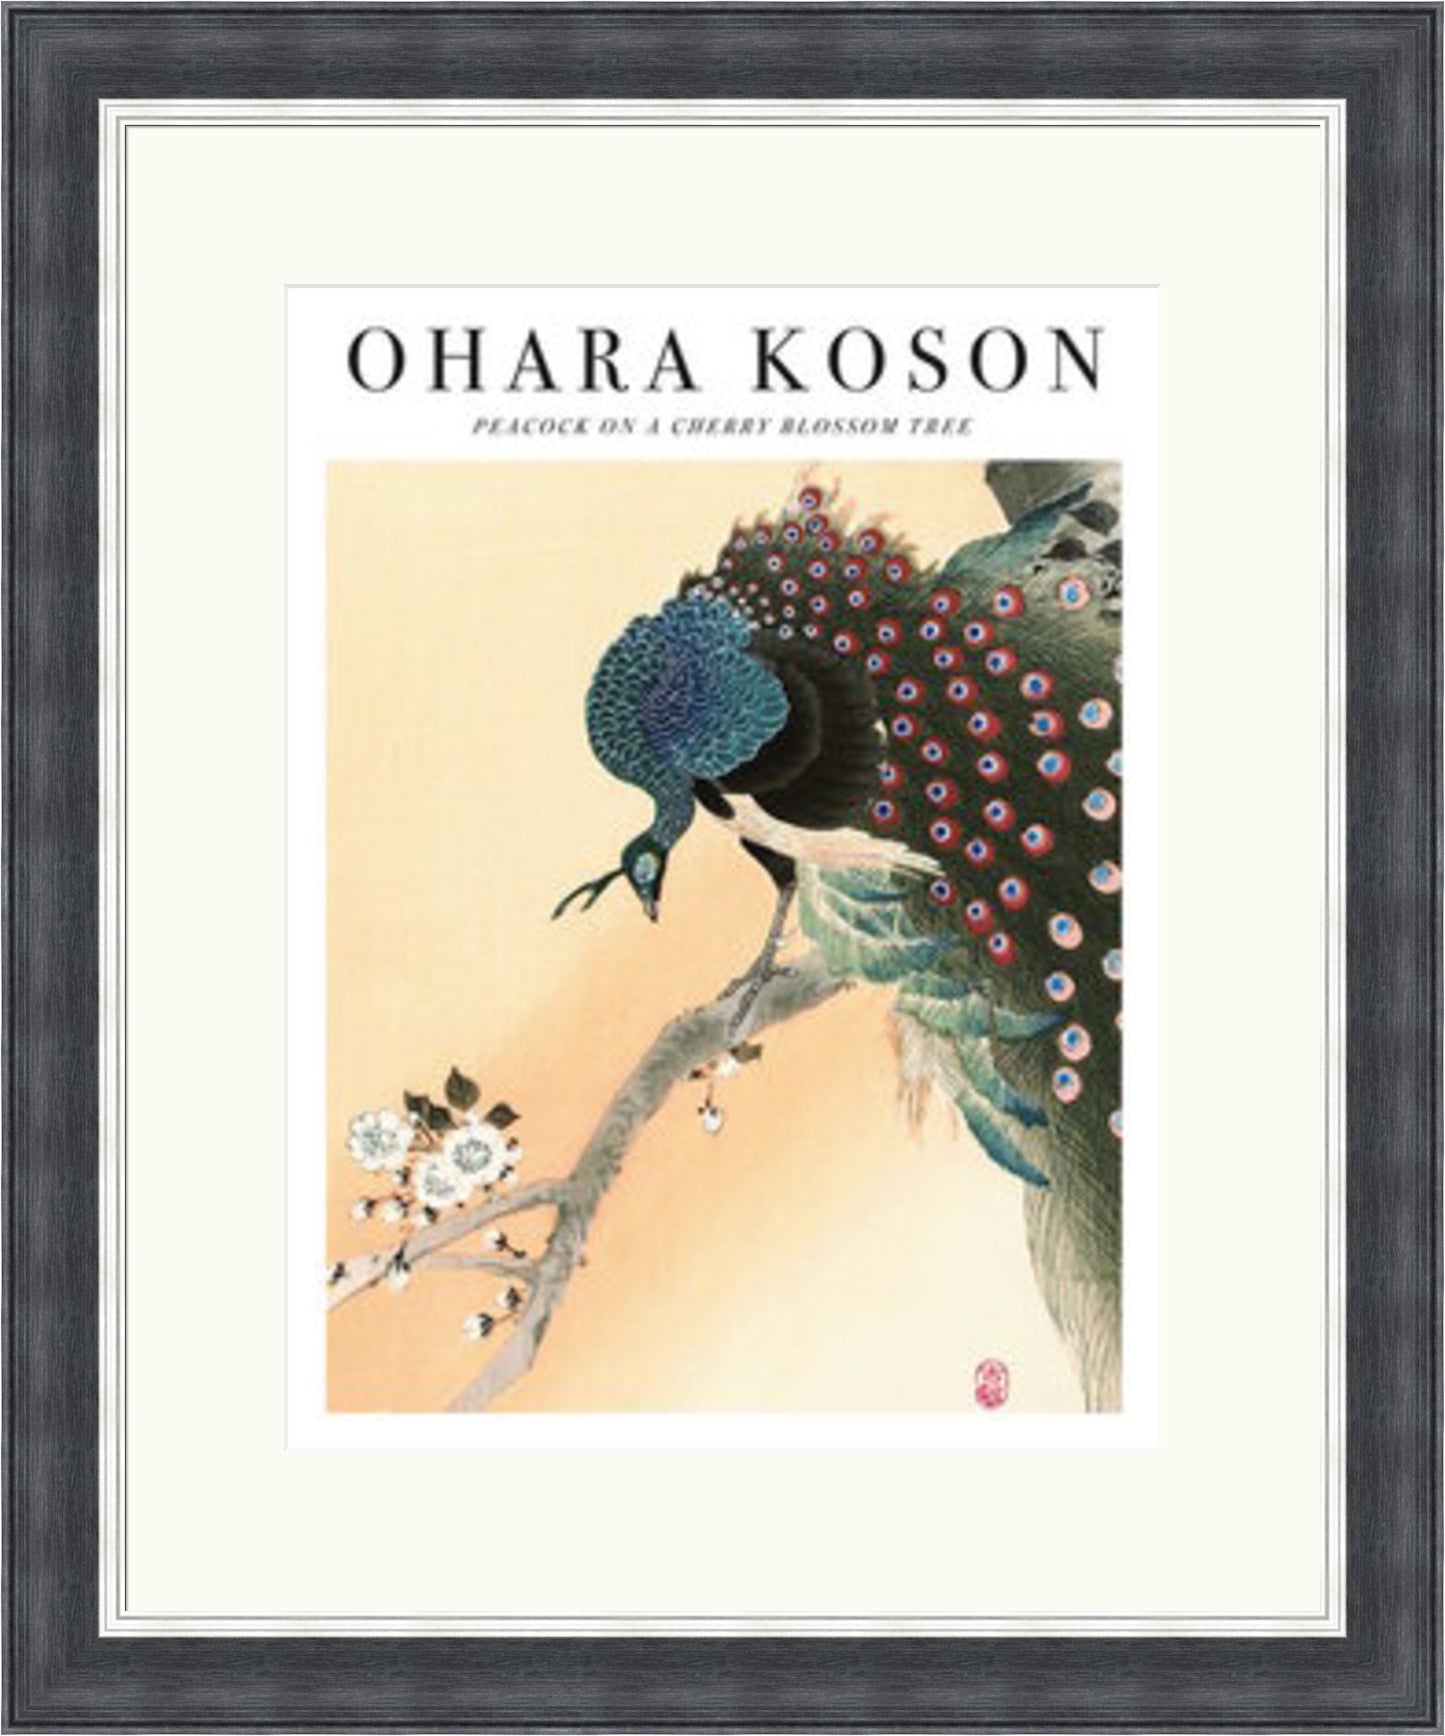 Peacock on a Cherry Blossom by Ohara Koson